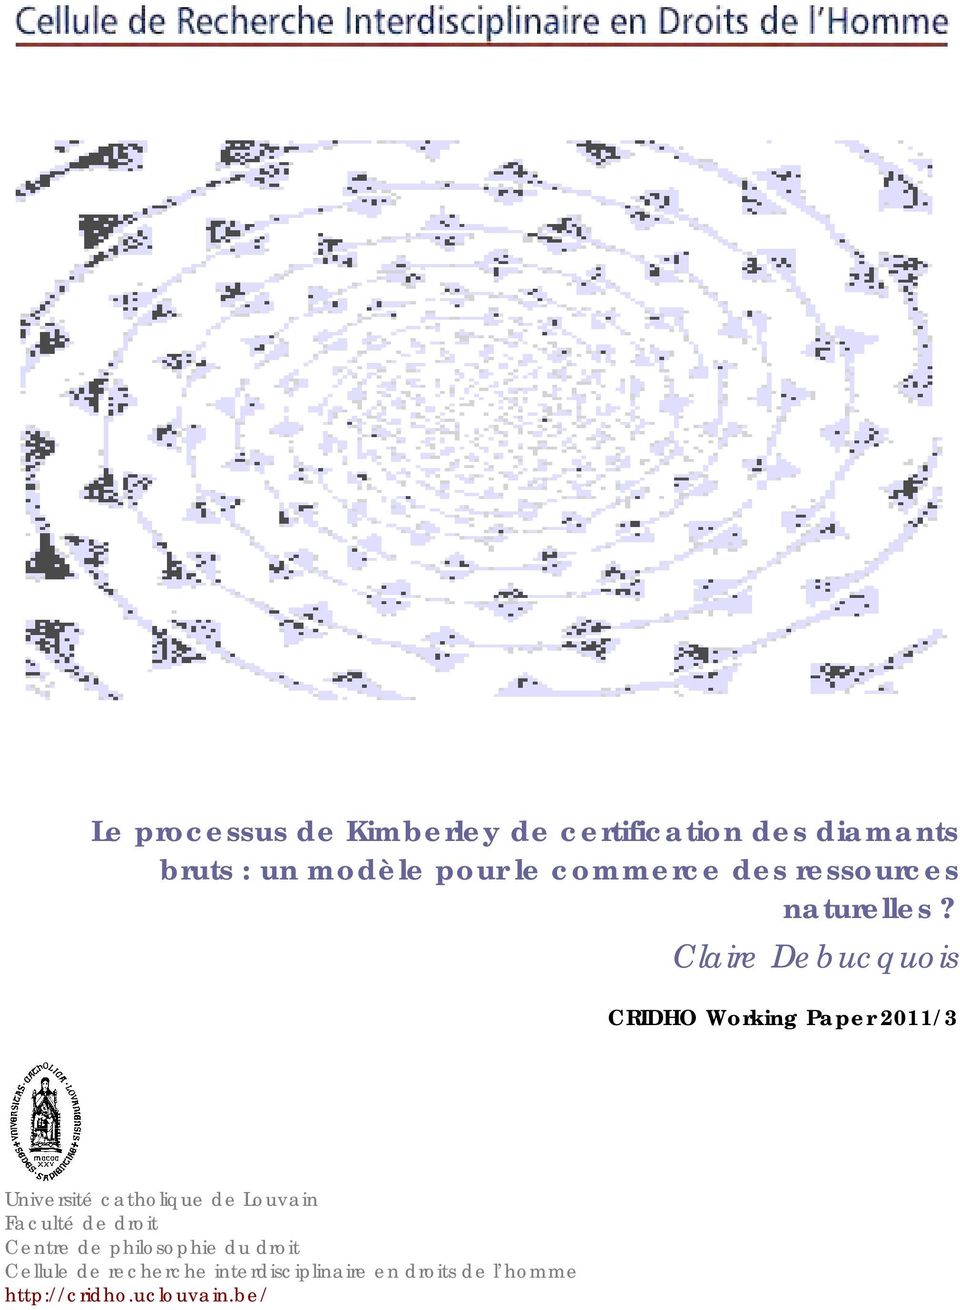 Claire Debucquois CRIDHO Working Paper 2011/3 Université catholique de Louvain